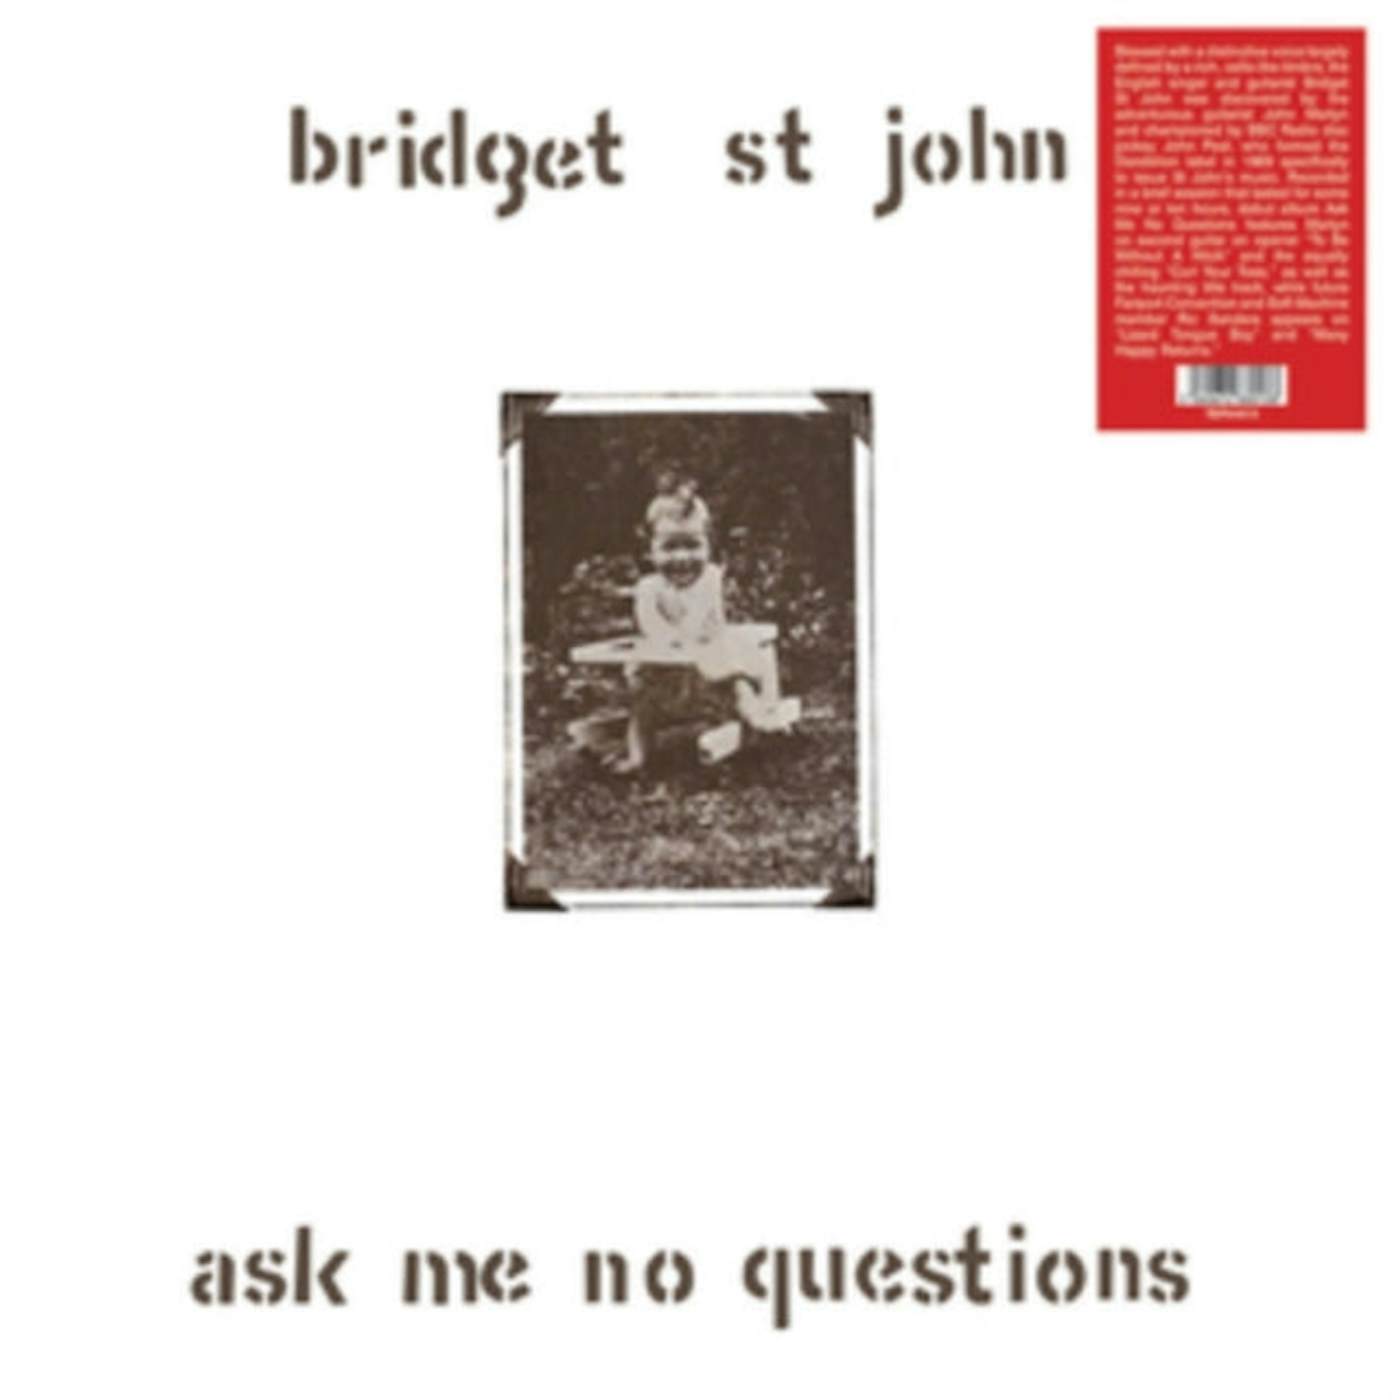 Bridget St John LP Vinyl Record - Ask Me No Questions